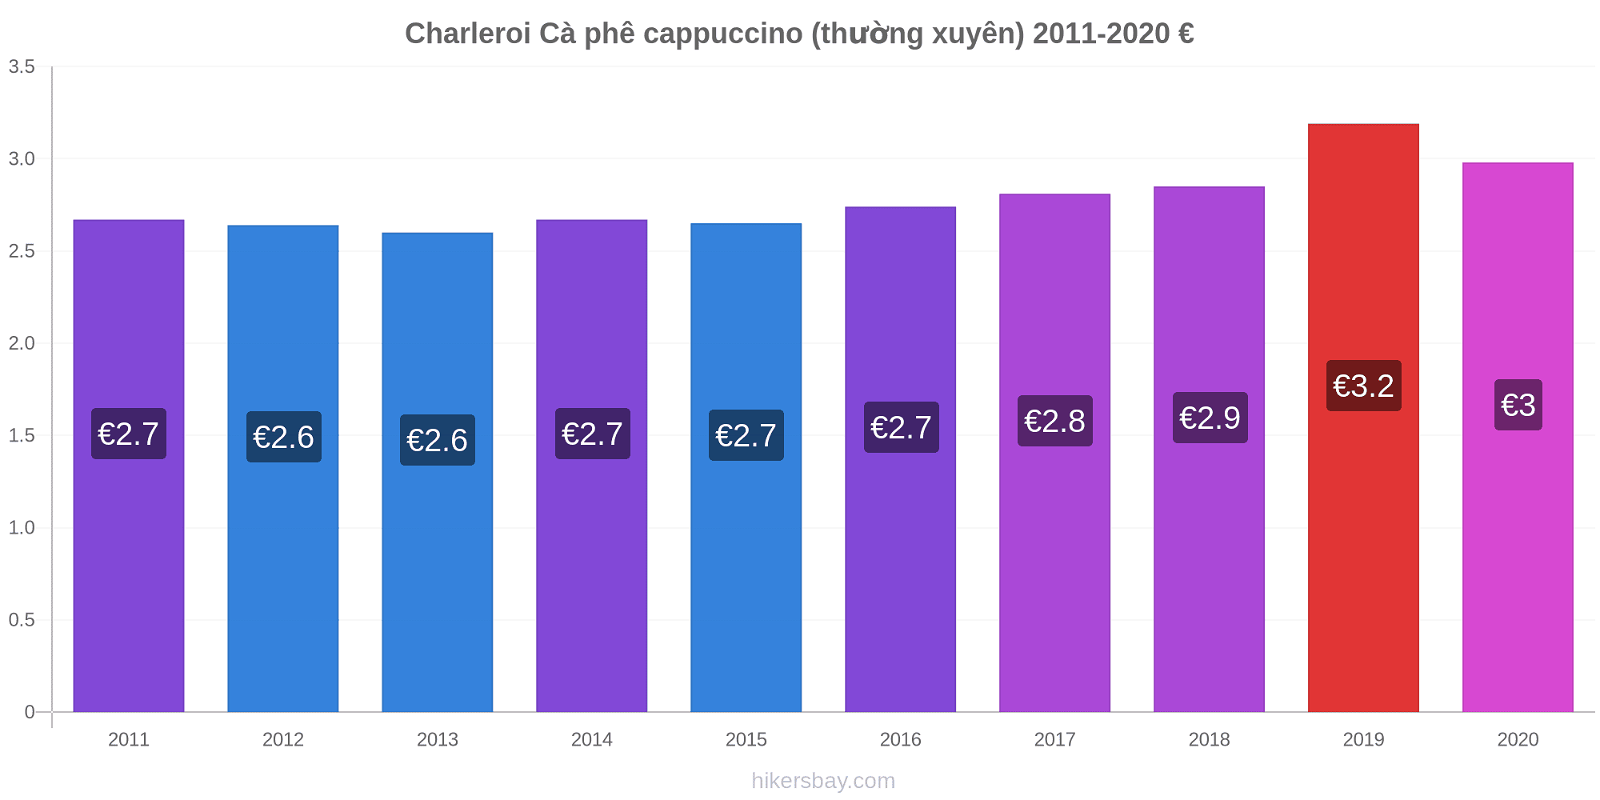 Charleroi thay đổi giá Cà phê cappuccino (thường xuyên) hikersbay.com